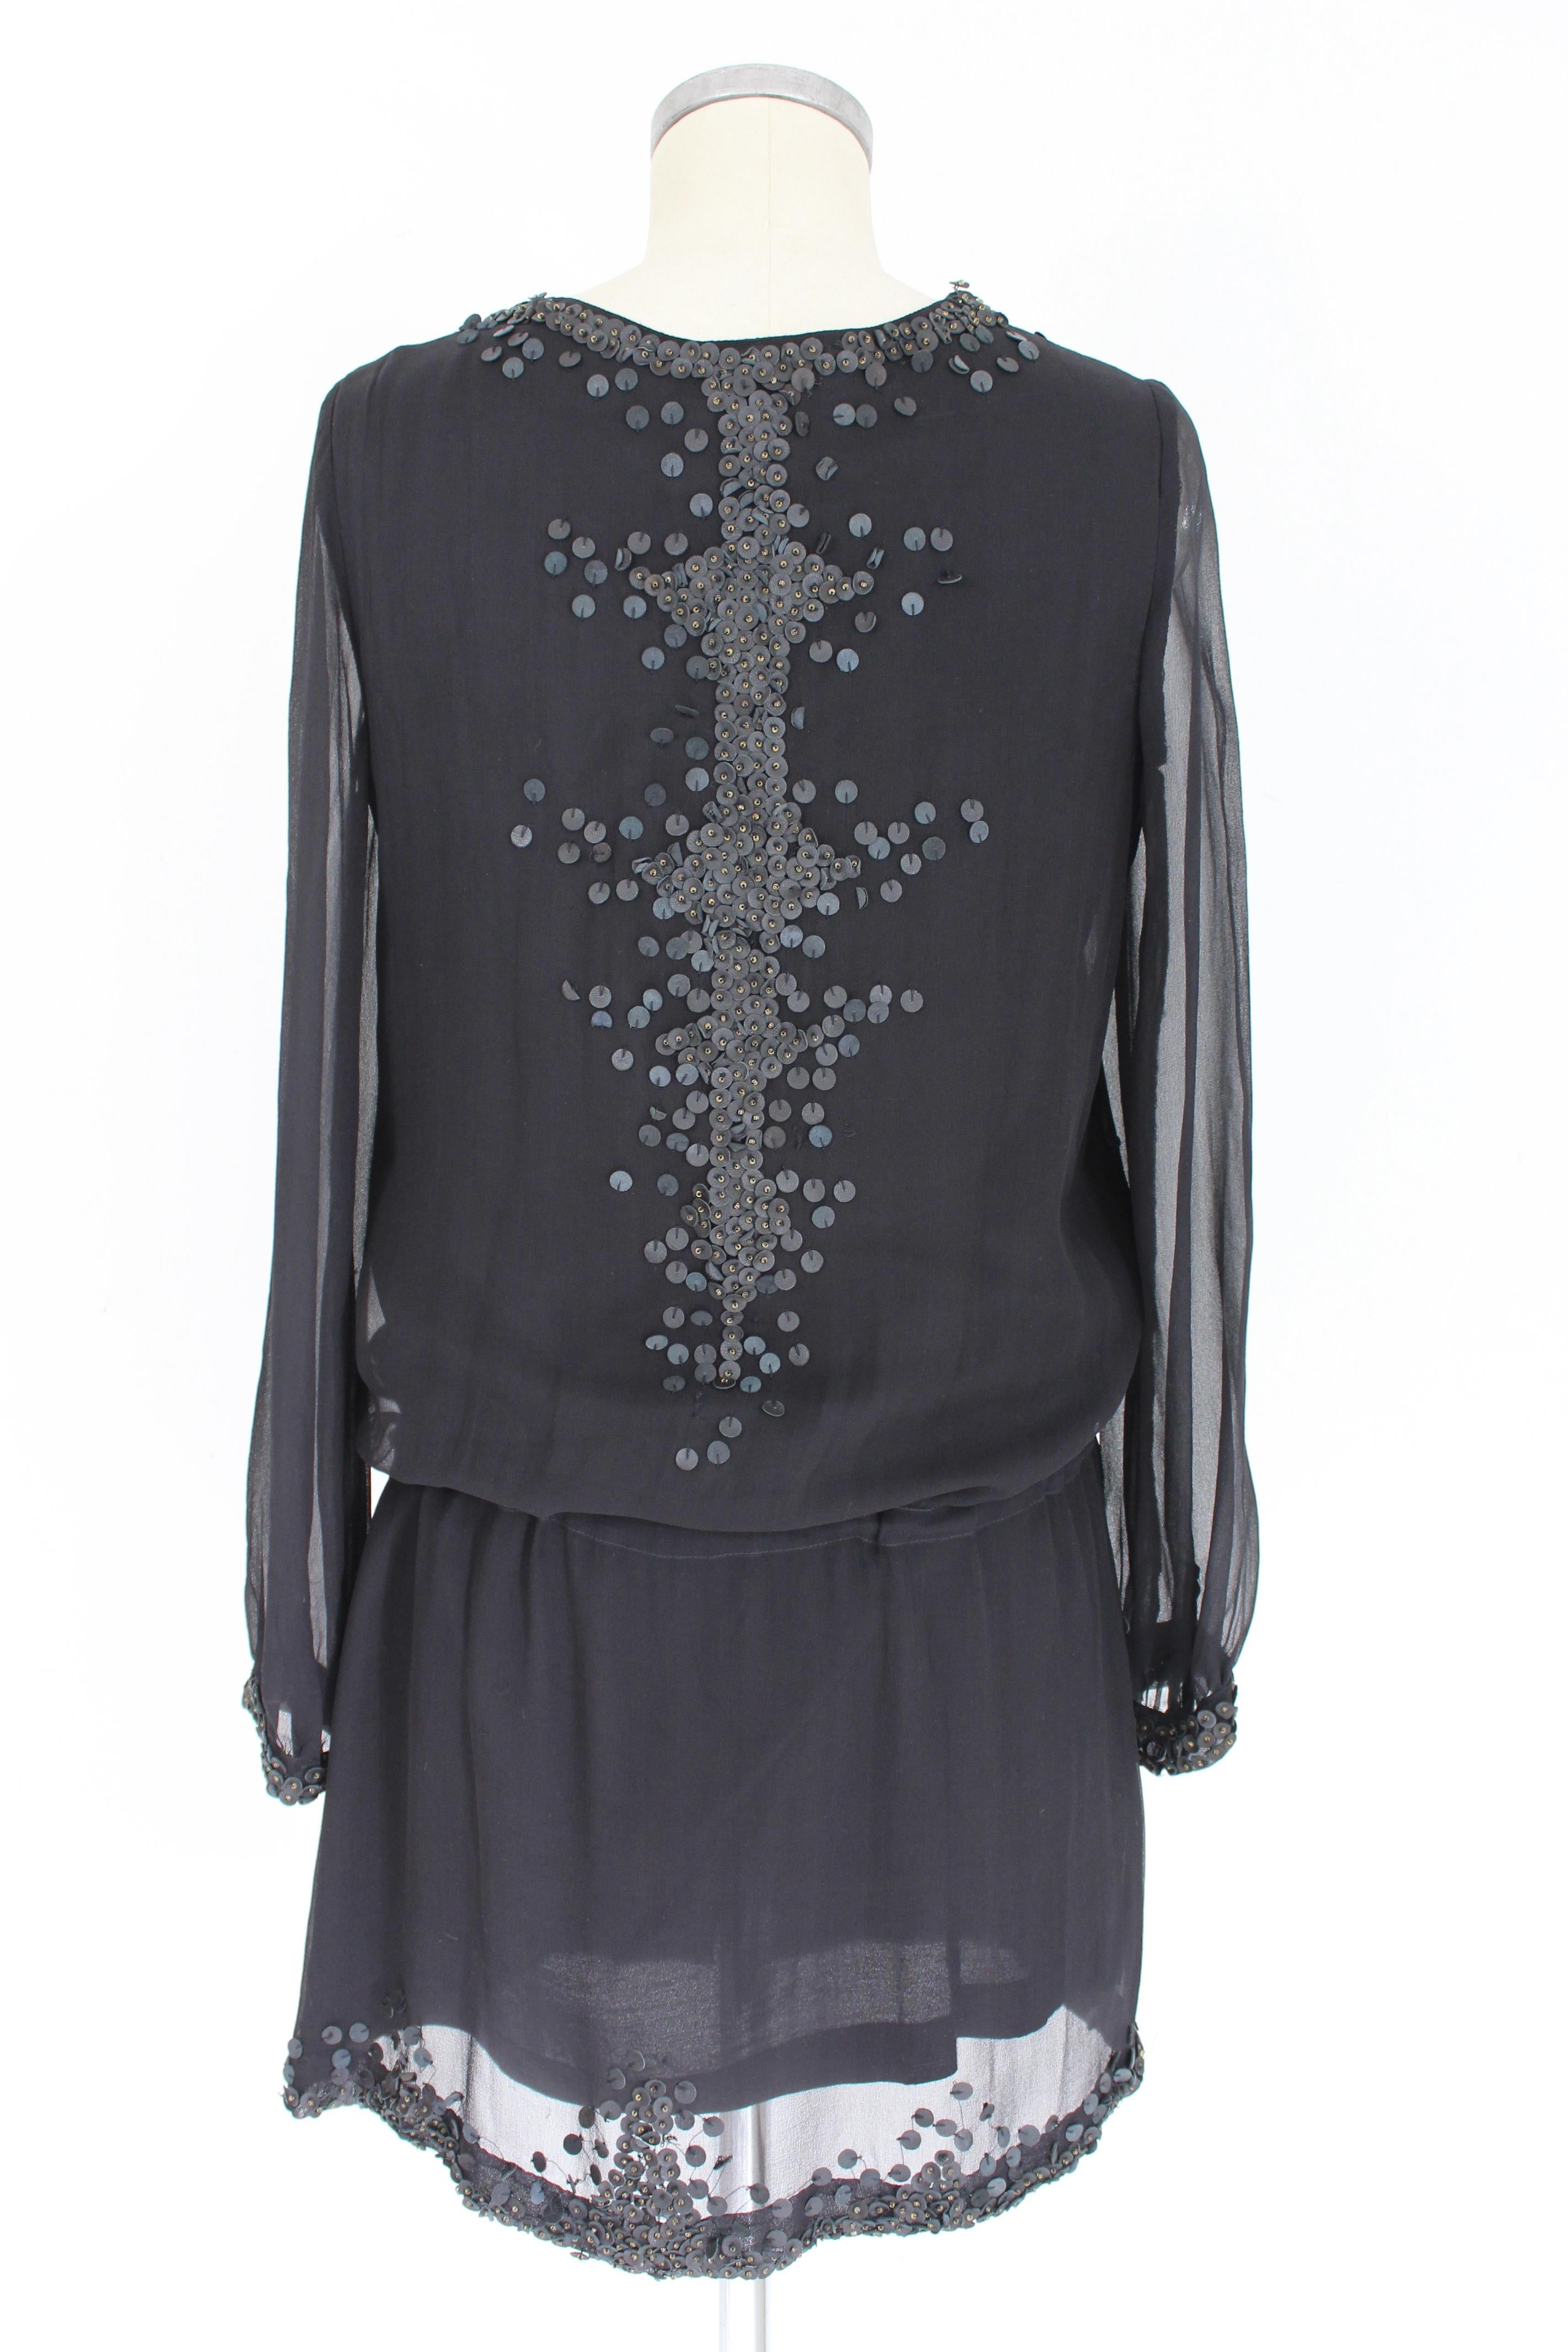 Kurzes Vintage-Kleid von Antik Batik für Frauen. Schwarze Farbe, 100% Seide, von Hand genähte Applikationen aus 100% Leder. V-Ausschnitt, elastischer Taillengürtel, gefüttert. 1990s. Entworfen in Frankreich, hergestellt in Indien. Ausgezeichneter